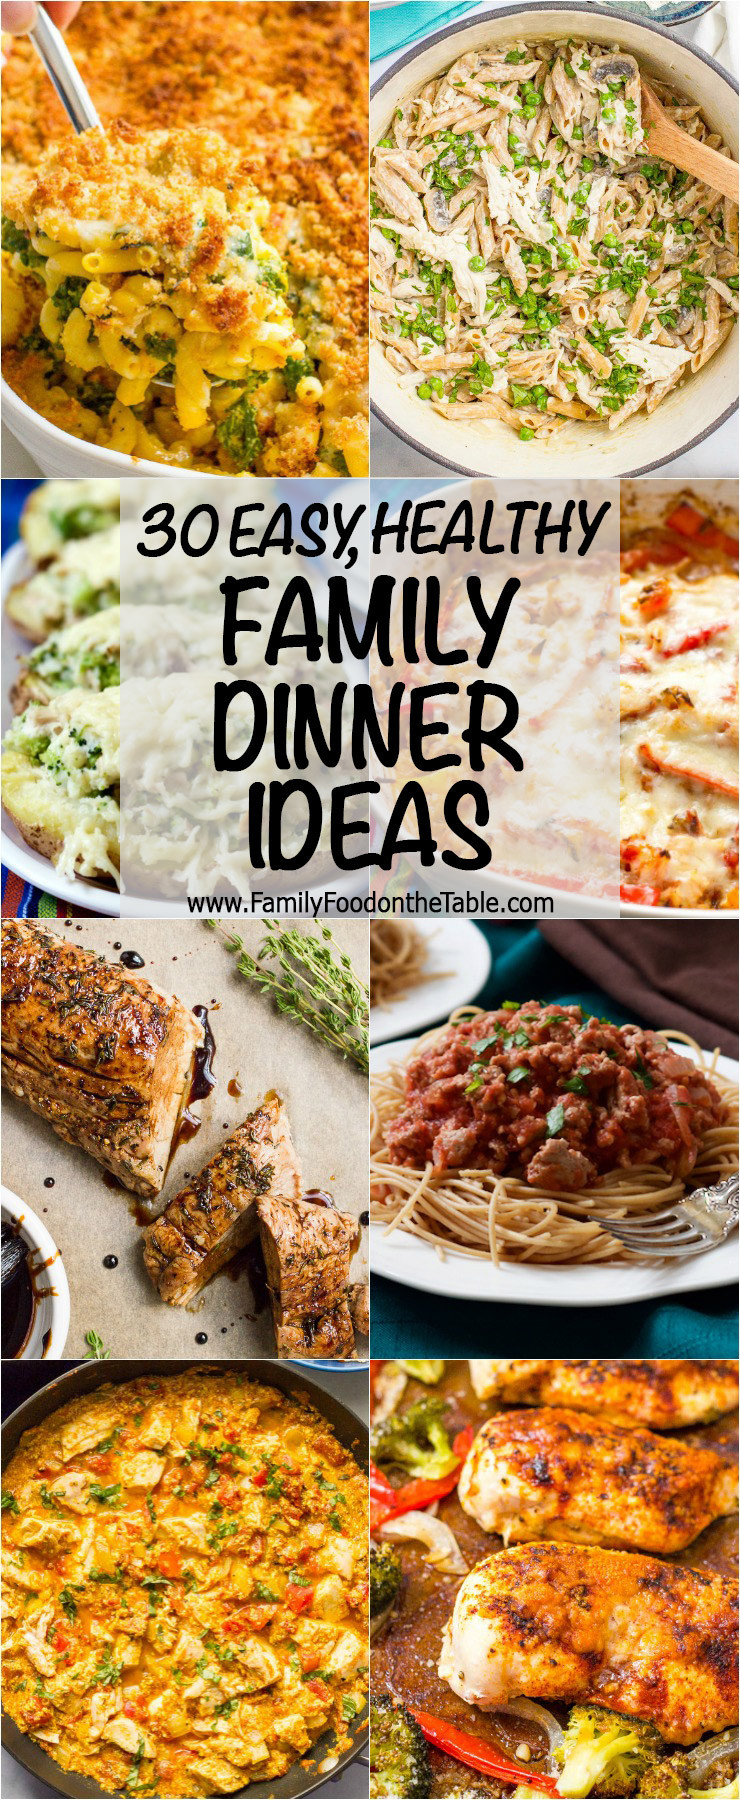 Pinterest Dinner Ideas
 30 easy healthy family dinner ideas Family Food on the Table